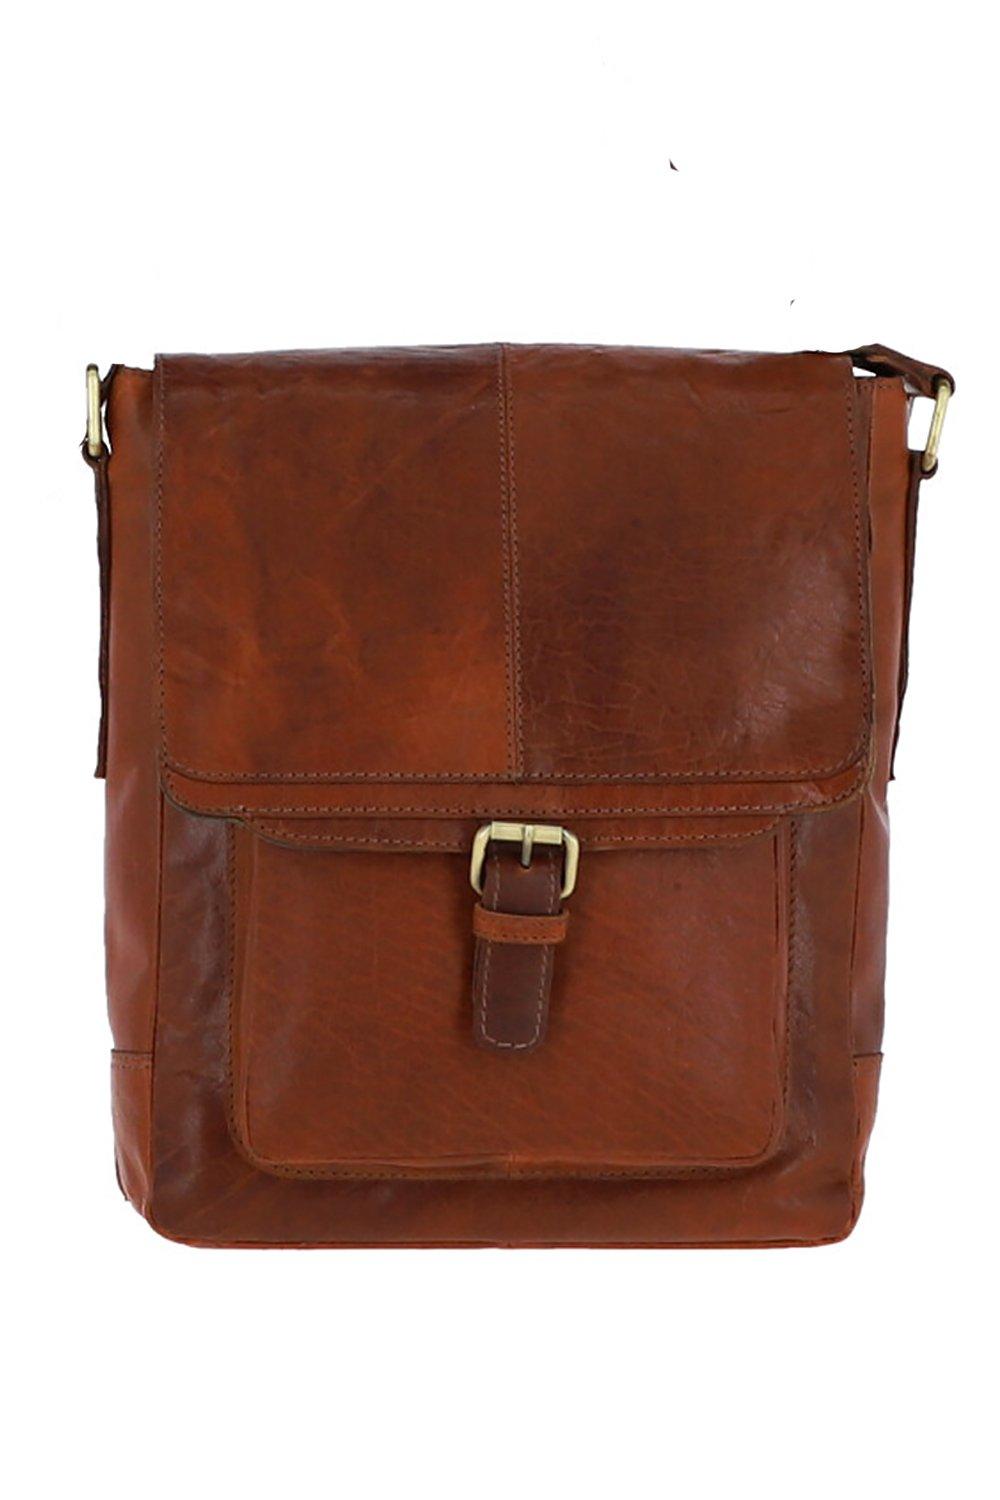 Дорожная сумка из винтажной кожи среднего размера Ashwood Leather, коричневый сумка кобура повседневная натуральная кожа внутренний карман регулируемый ремень черный